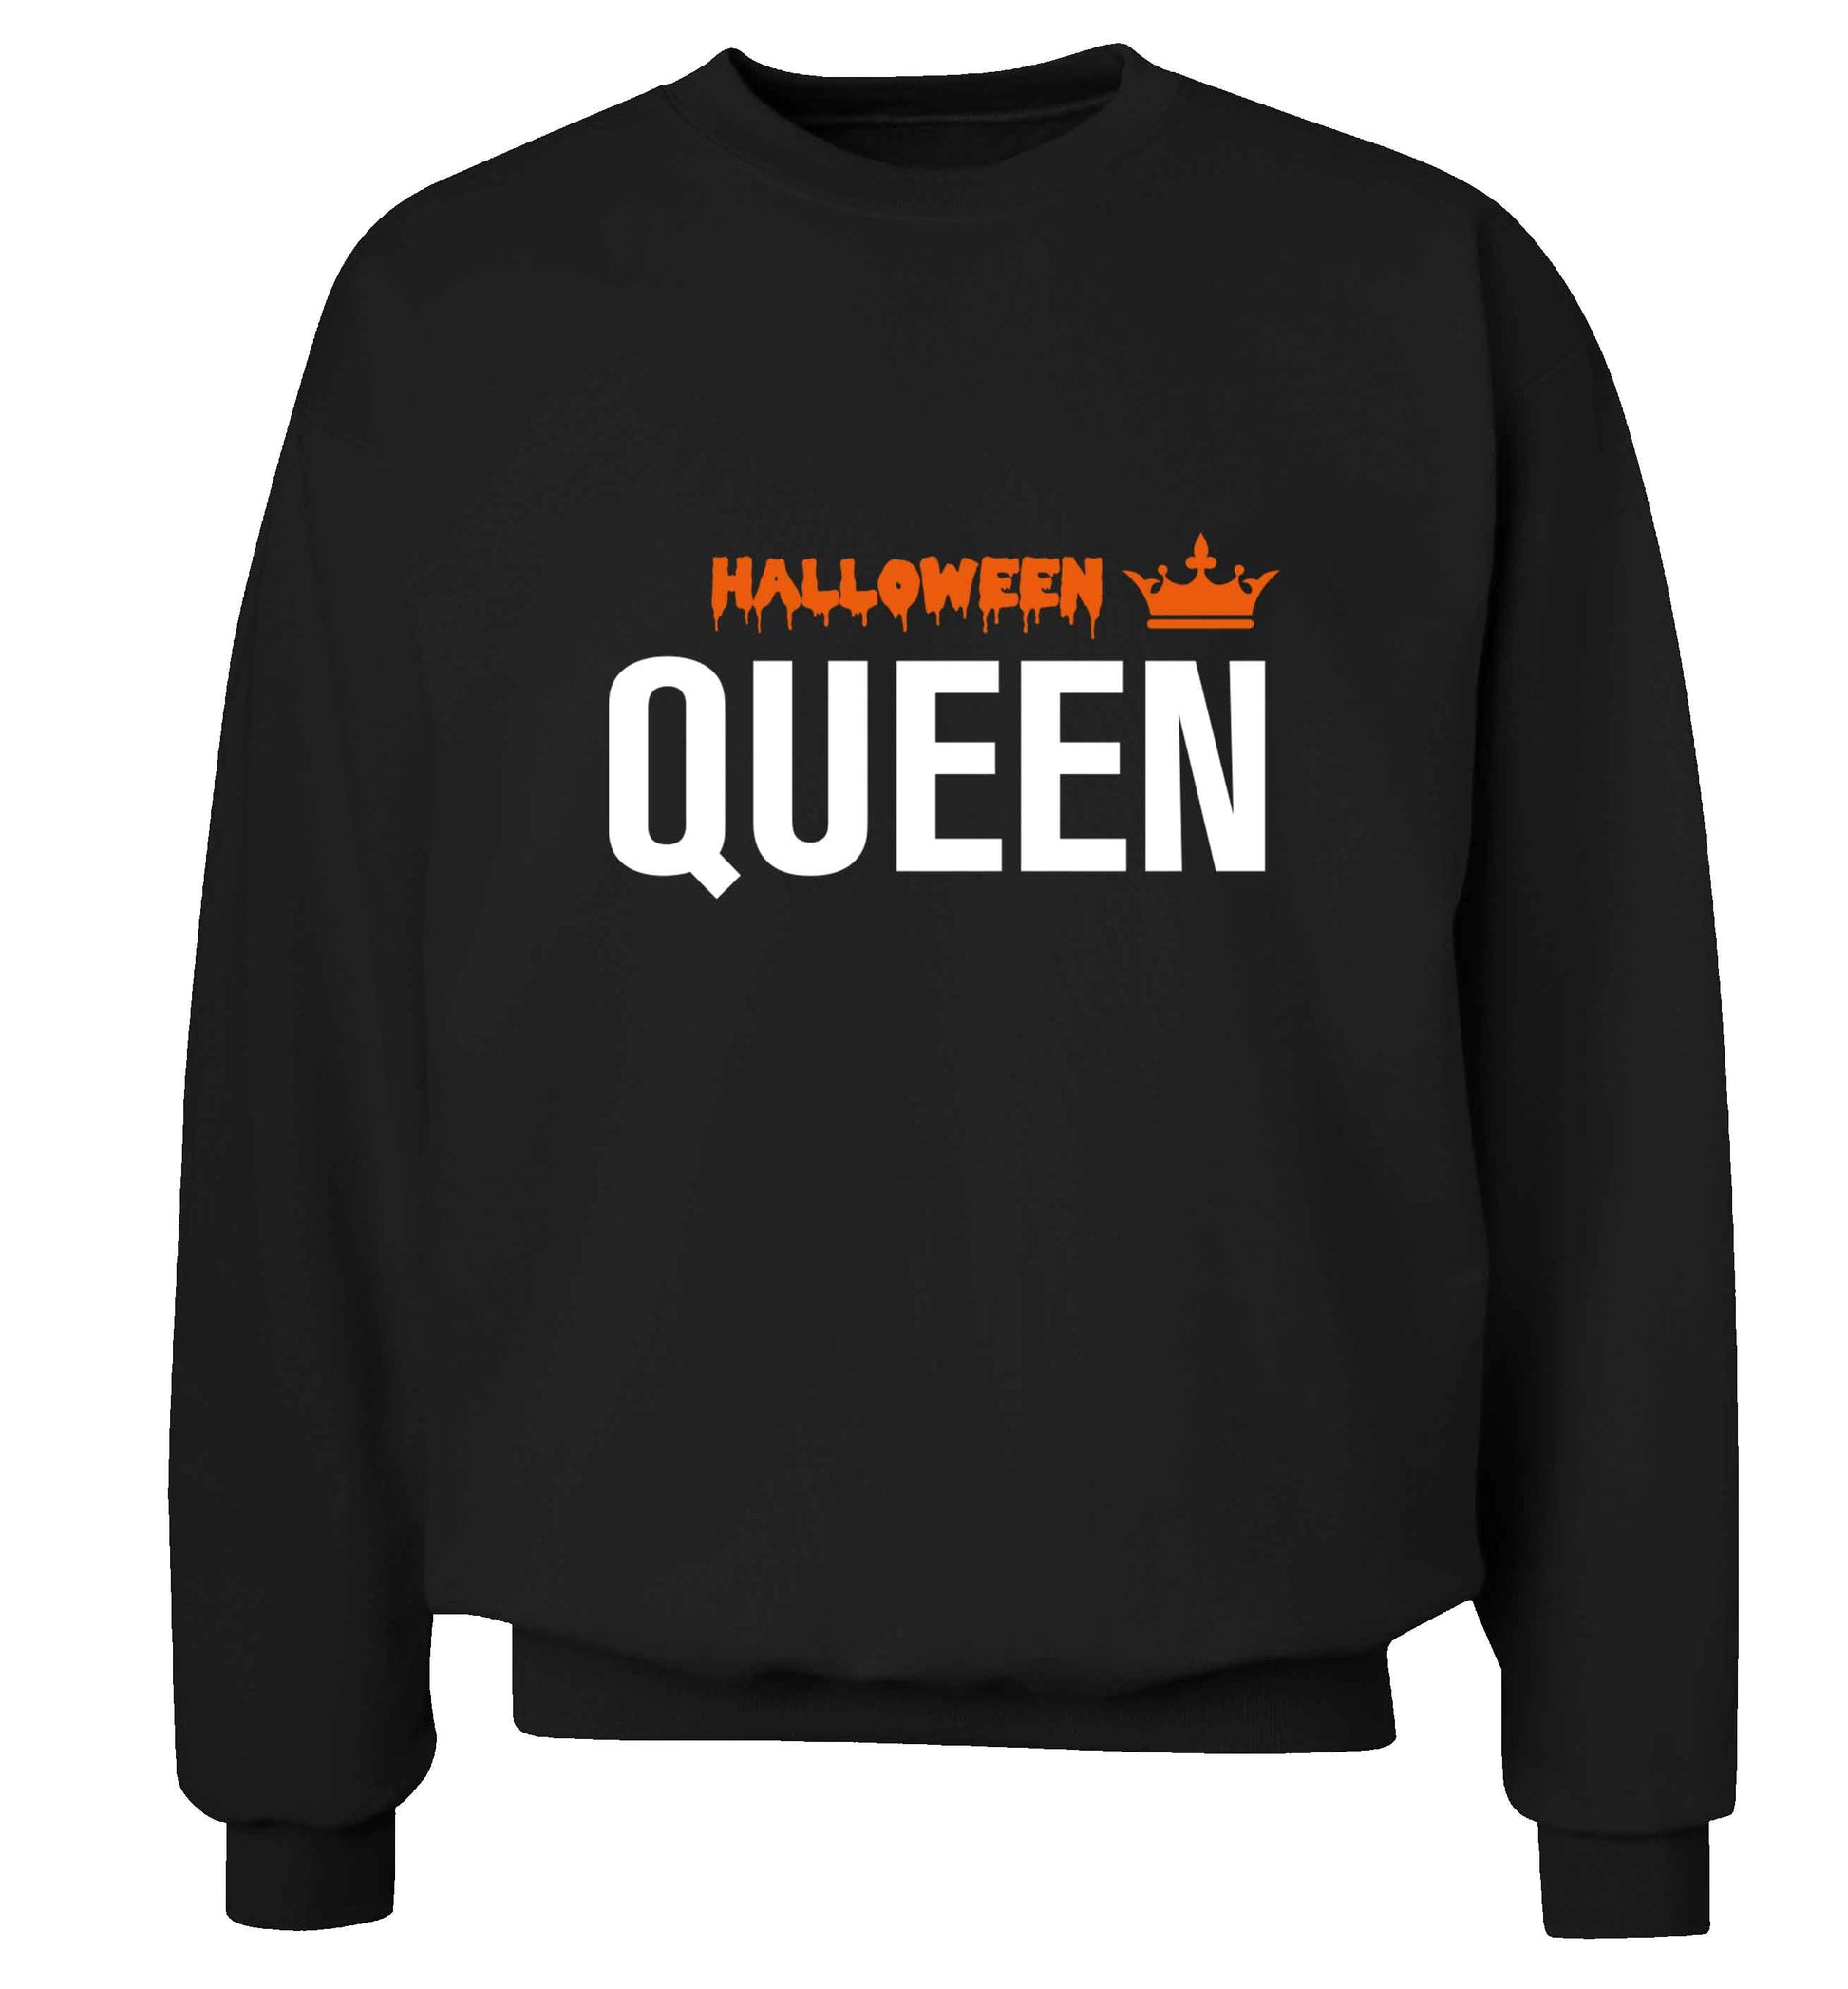 Halloween queen adult's unisex black sweater 2XL